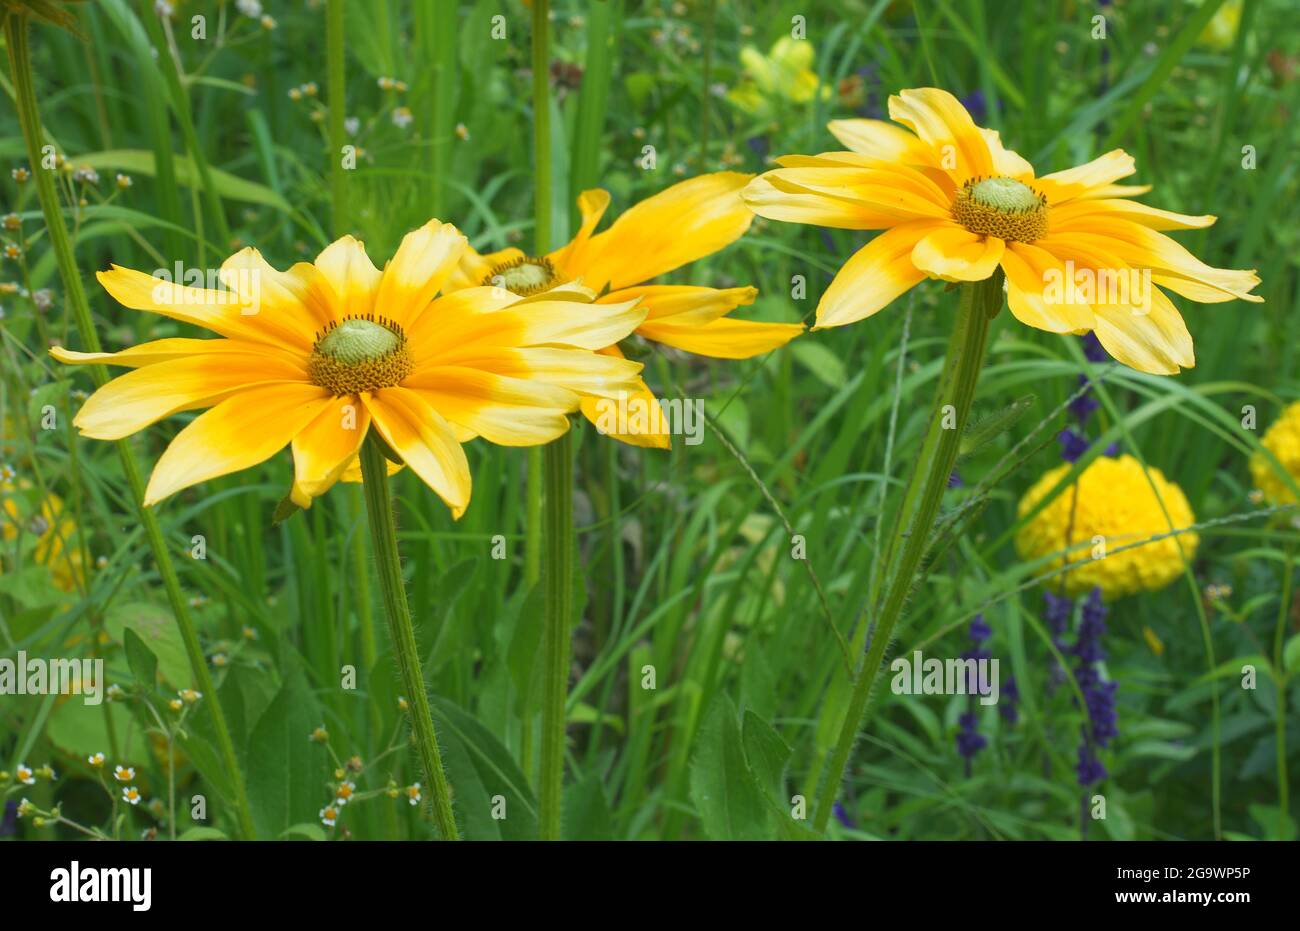 Fiore giallo di Rudbeckia hirta o Black Eyed Susan su sfondo verde. Conosciuto anche come betty marrone, daisy gloriosa, Gerusalemme dorata, toro inglese e Foto Stock